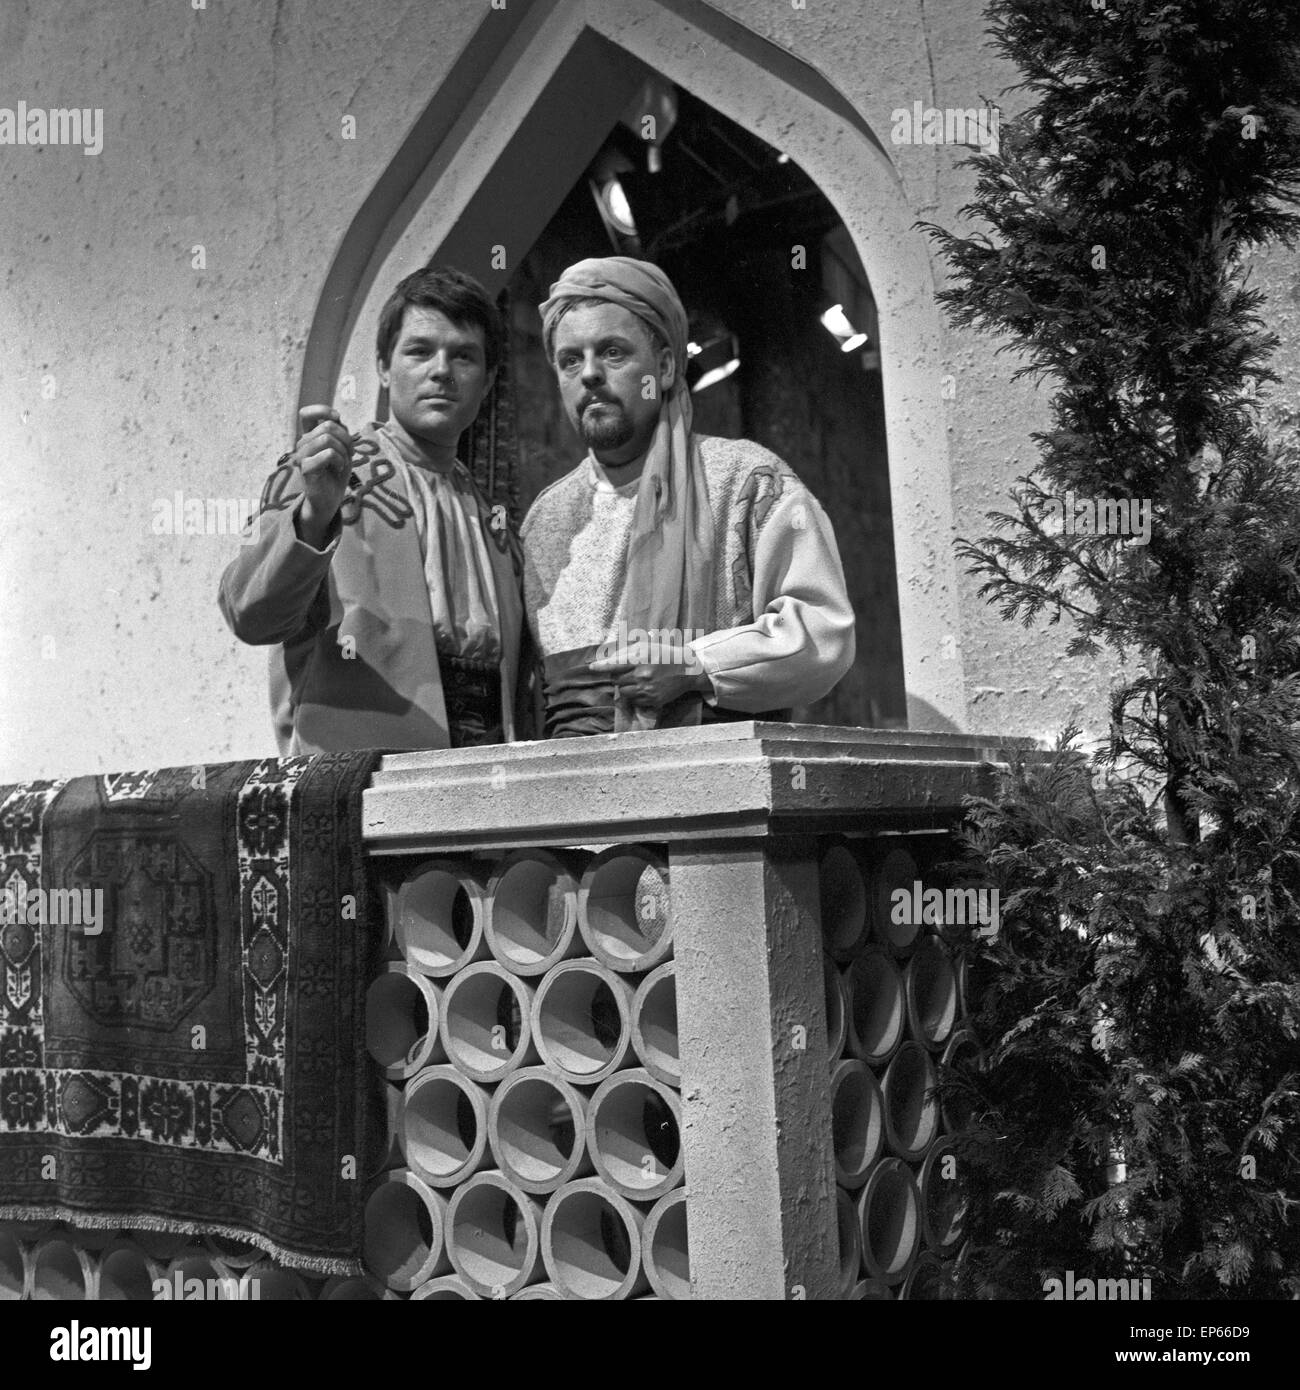 Ibn Sabah, Fernsehspiel, Deutschland 1963, Szenenfoto Stock Photo